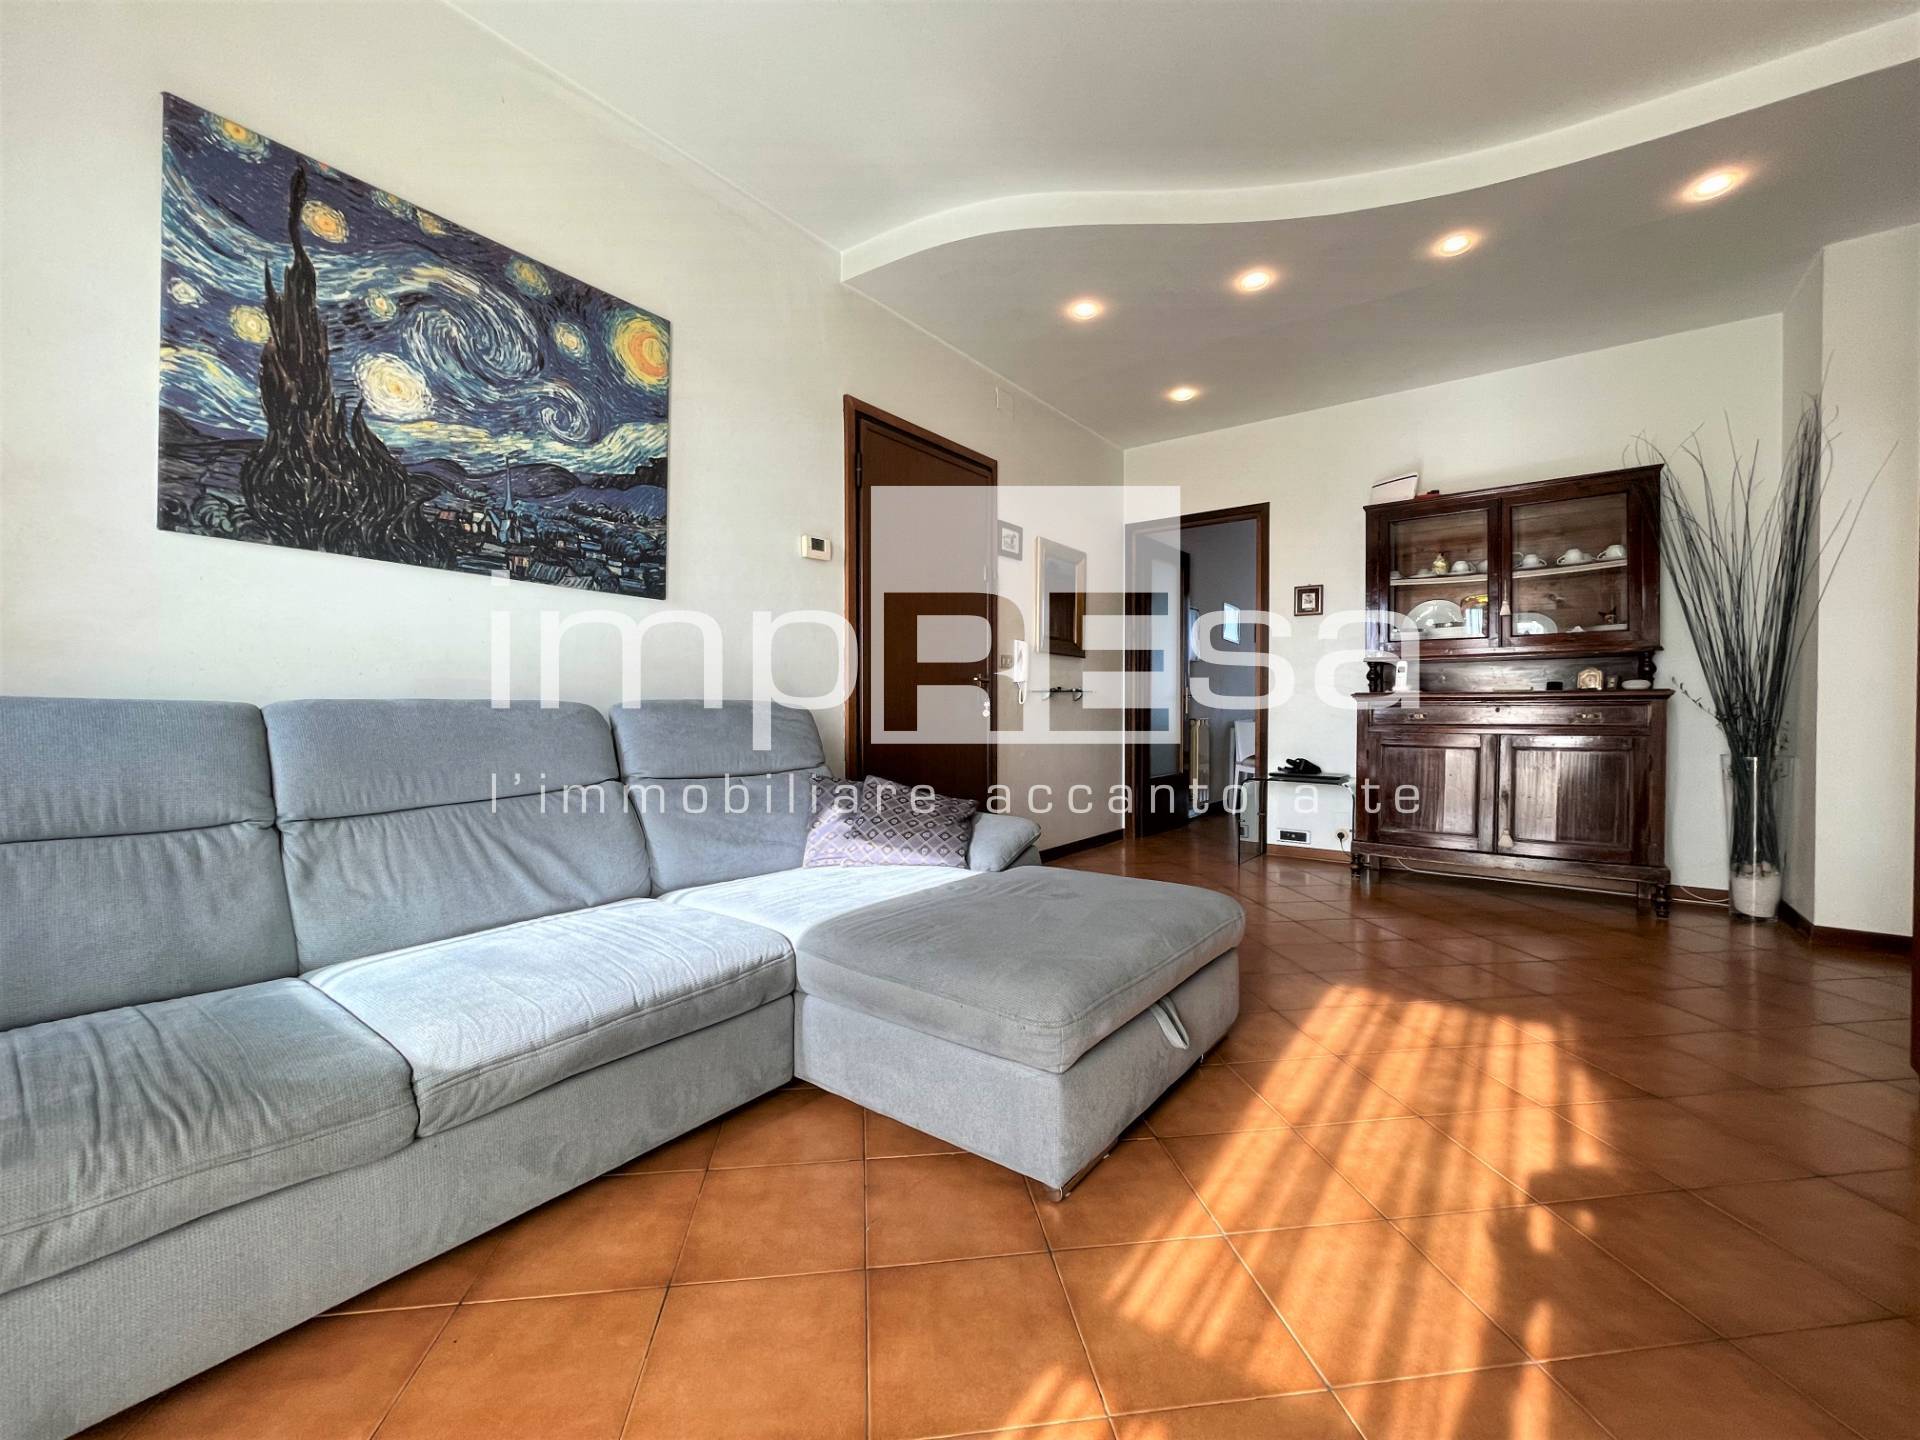 Appartamento in vendita a Mogliano Veneto, 3 locali, prezzo € 115.000 | PortaleAgenzieImmobiliari.it